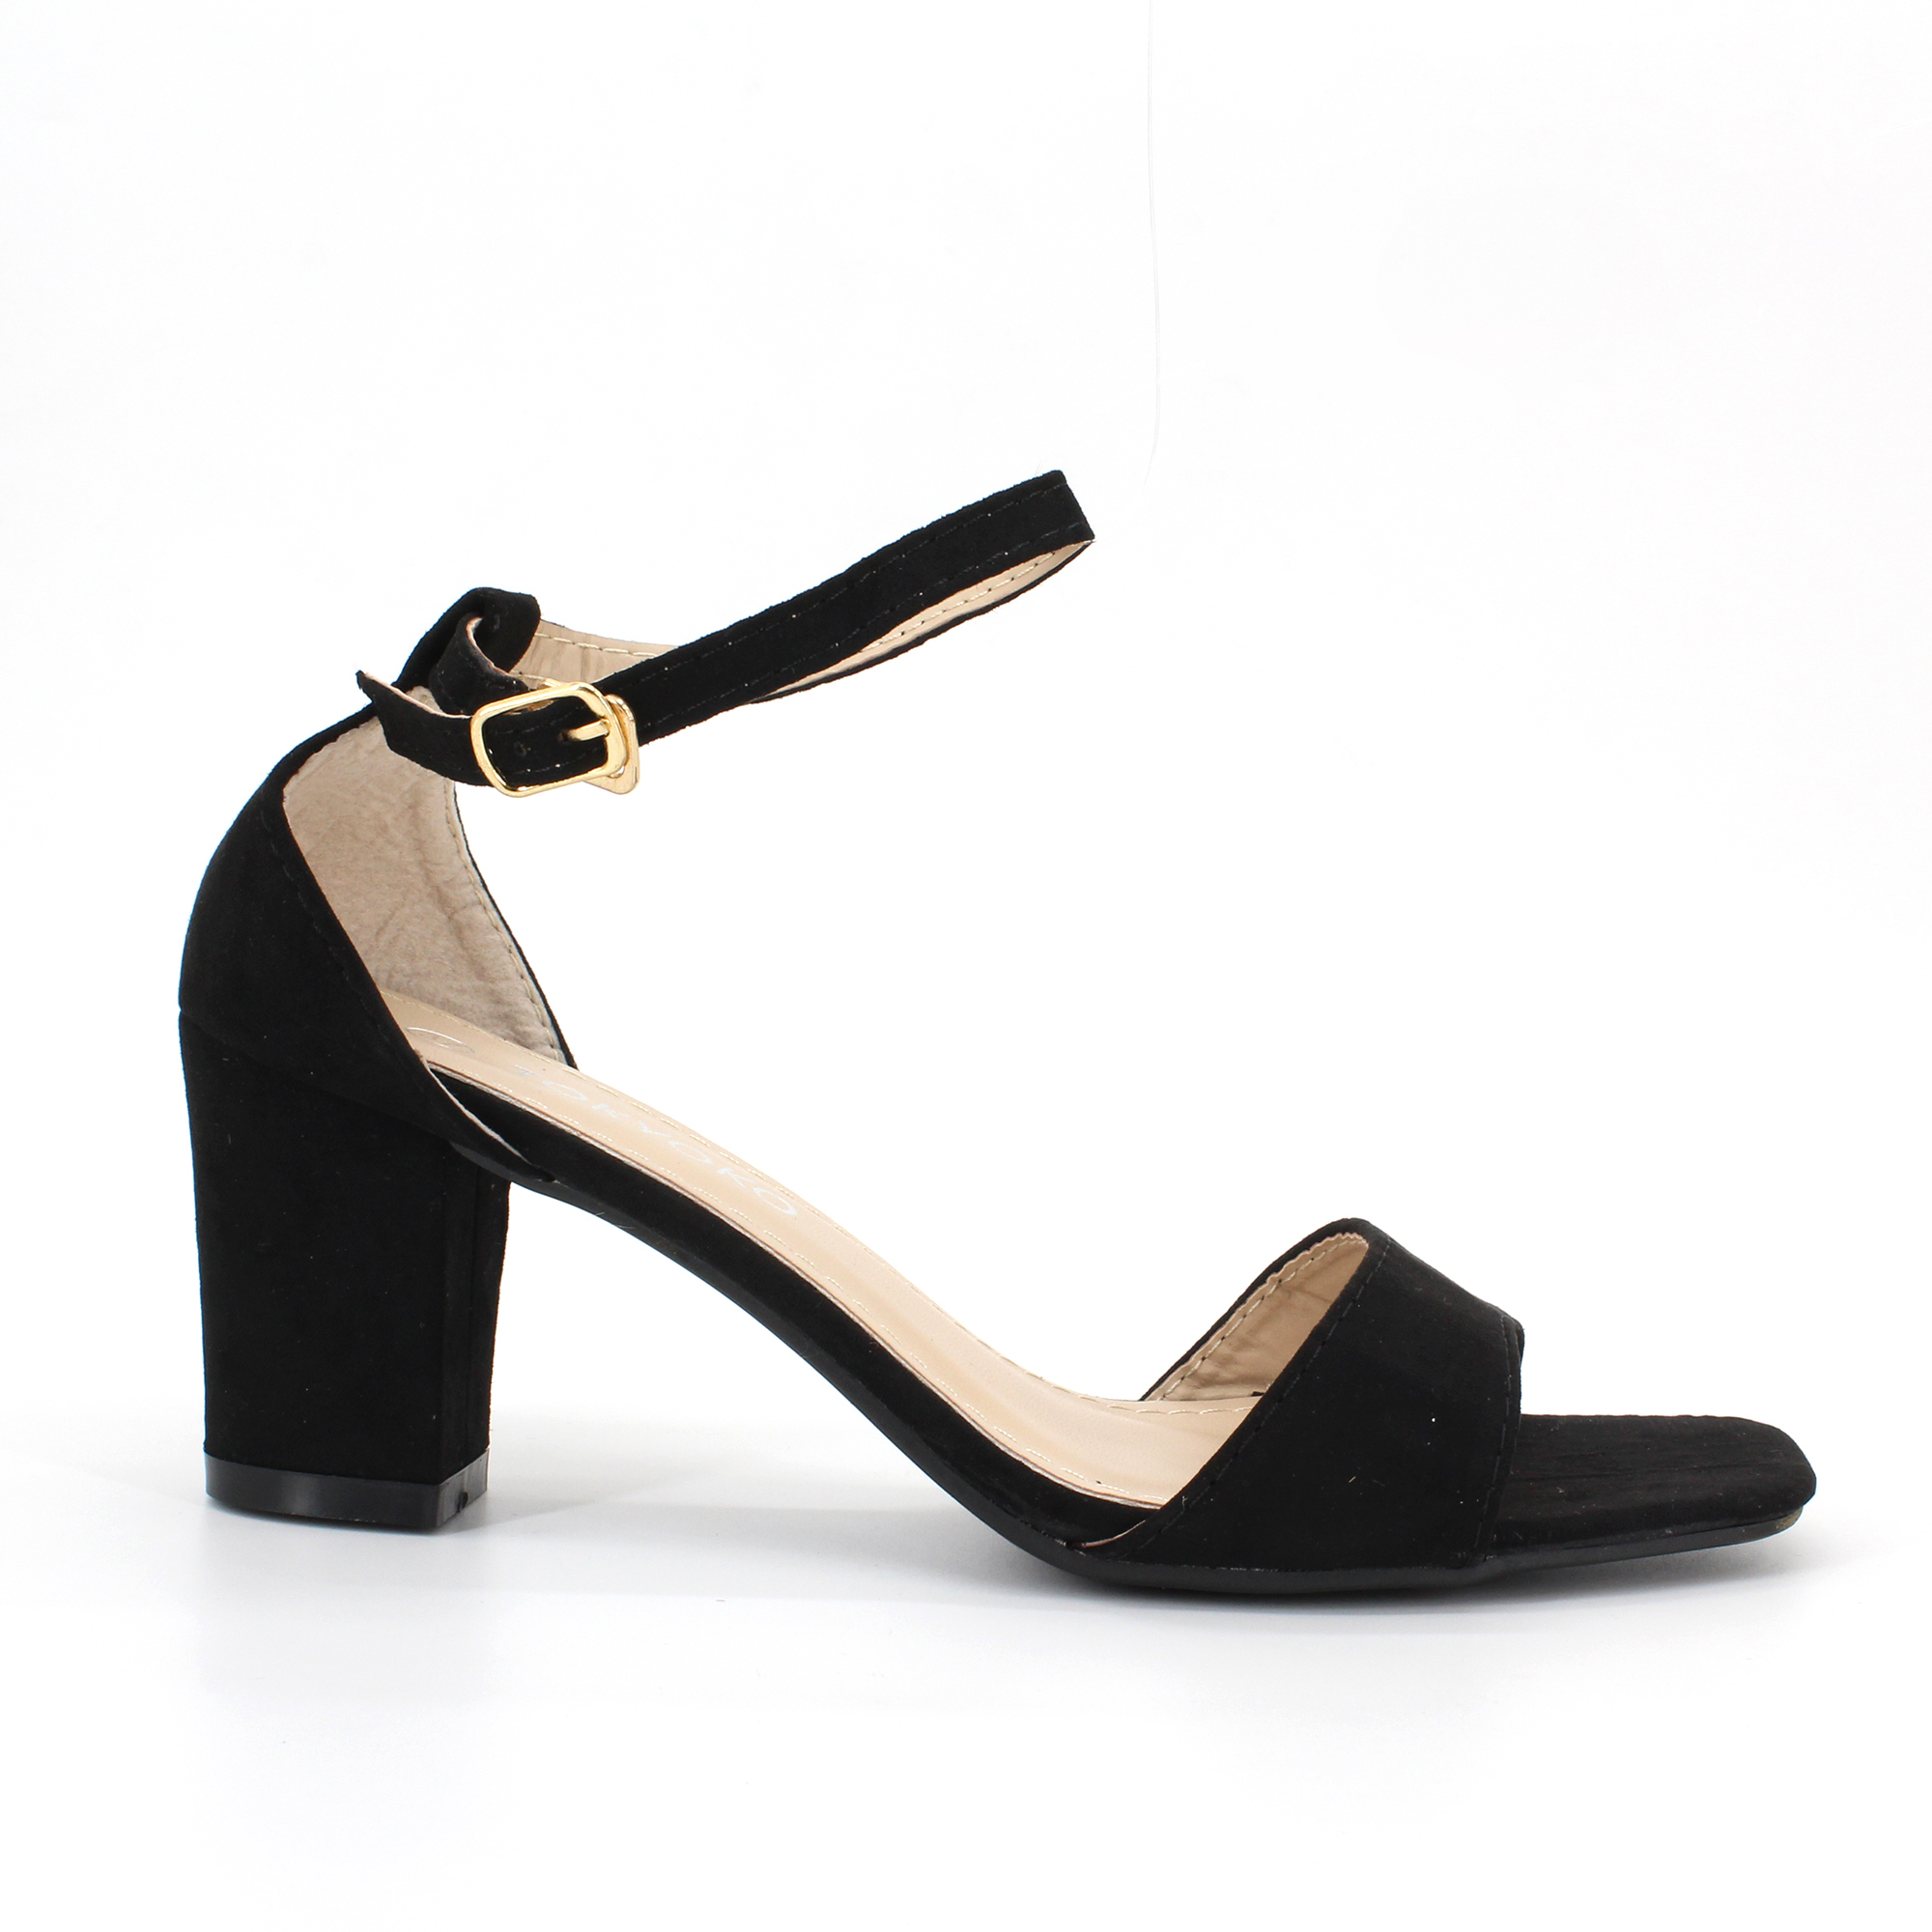 affordable heels online